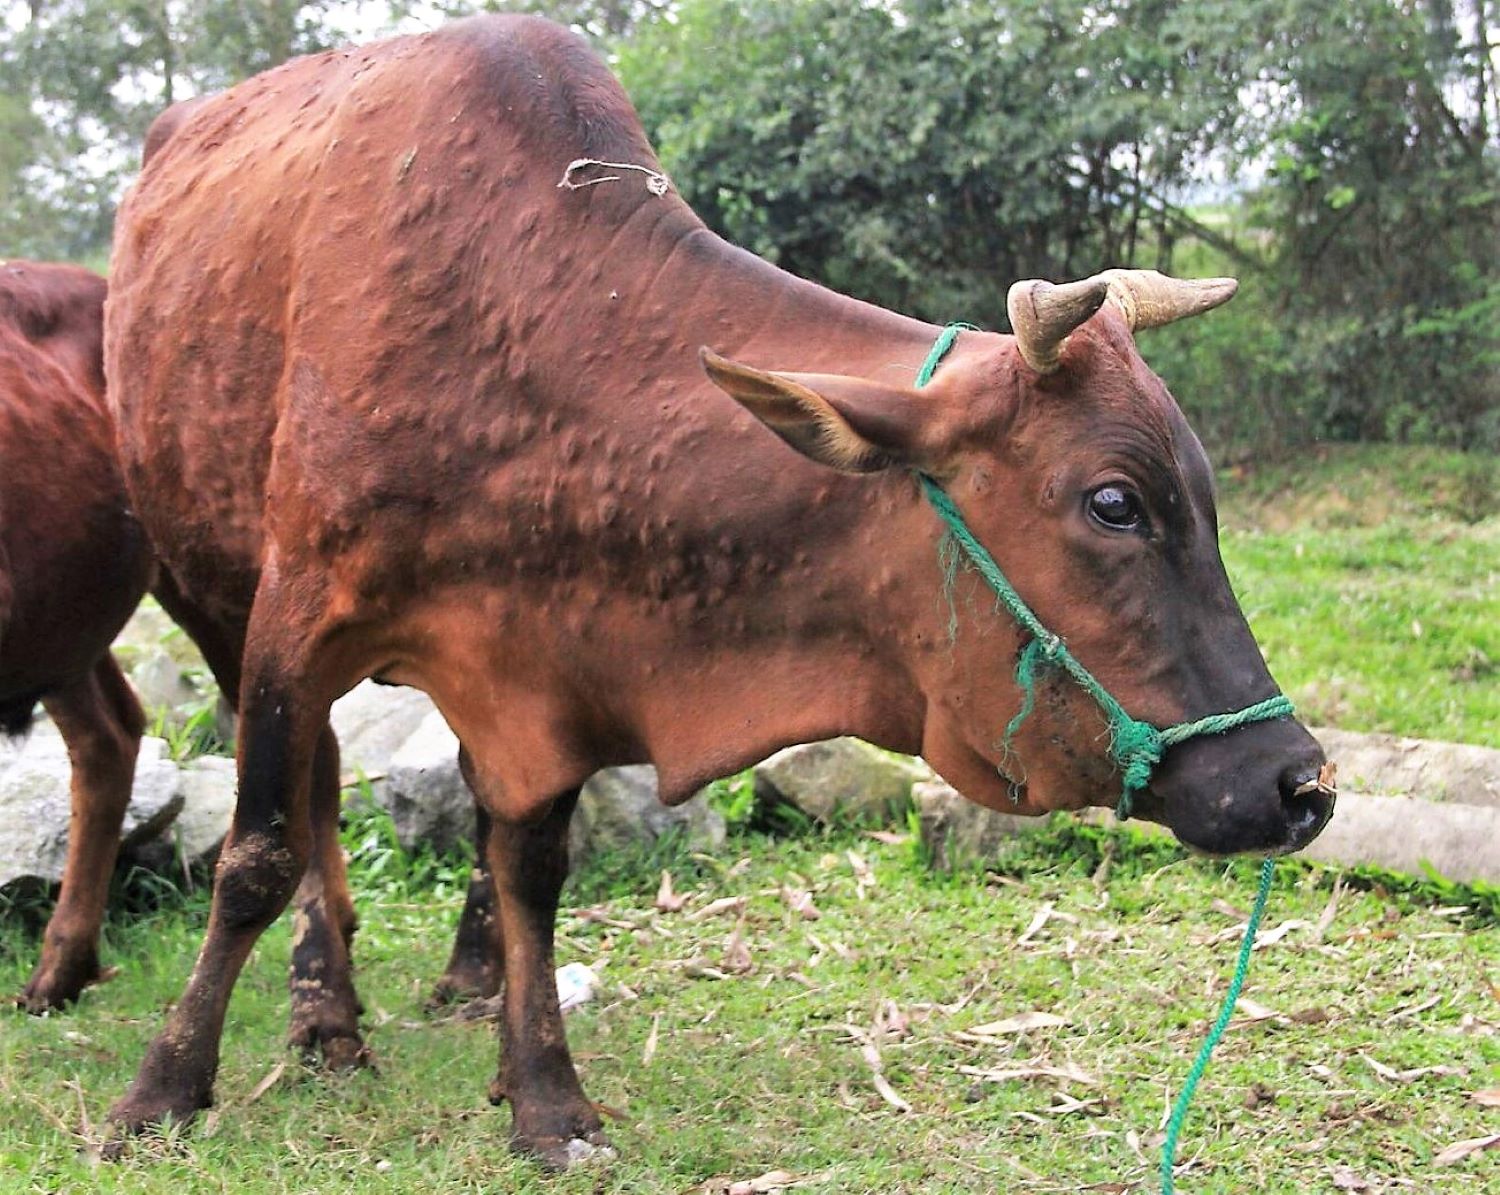 vov_ Bện viêm da nổi cục trên trâu bò xuất hiện ở Quảng ngãi từ đầu tháng 3 đến nay.jpg